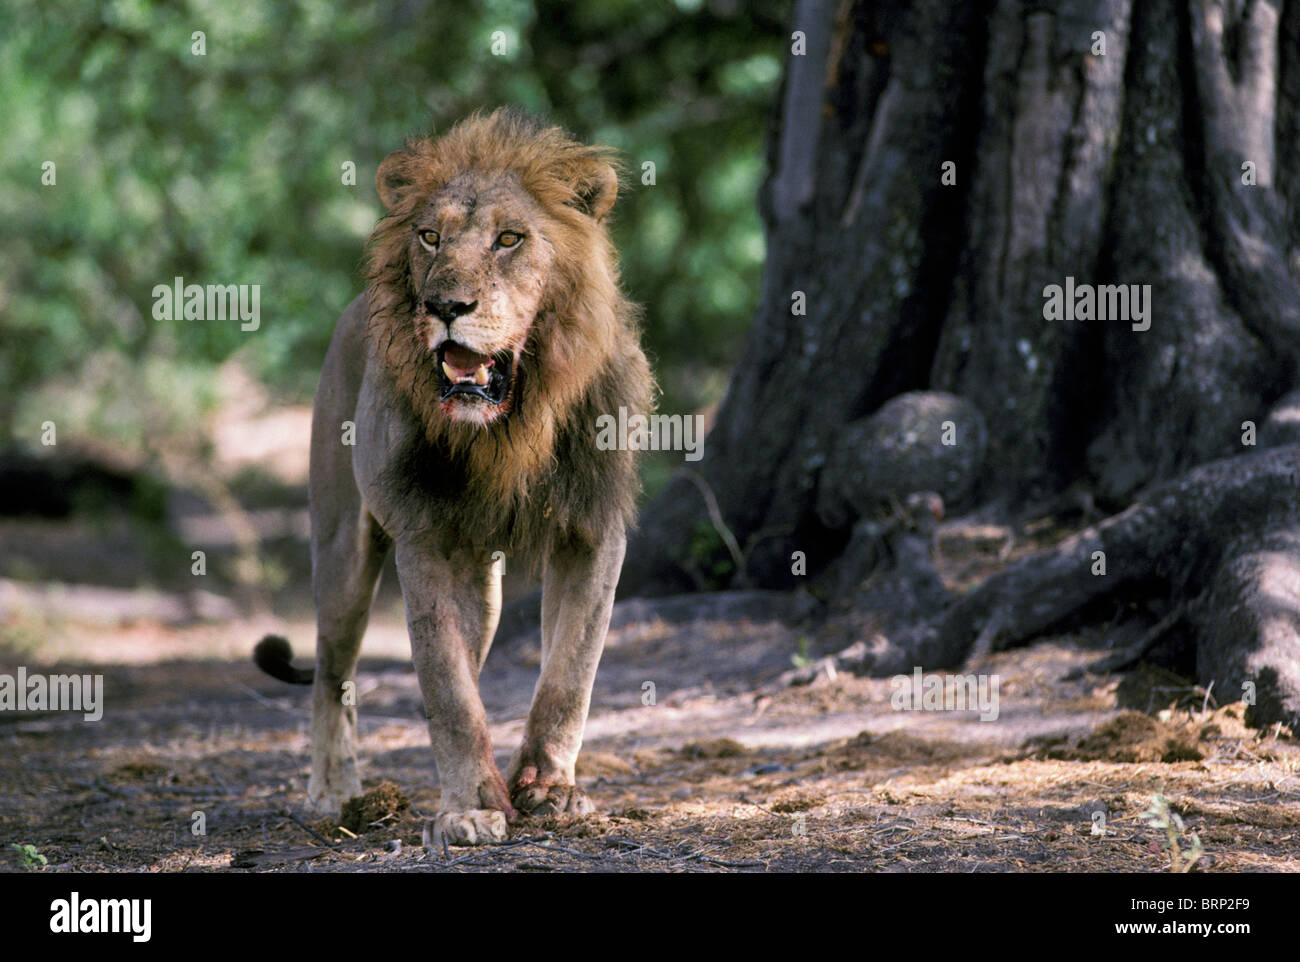 Lion (Panthera leo) d'hommes marcher vers la caméra Banque D'Images